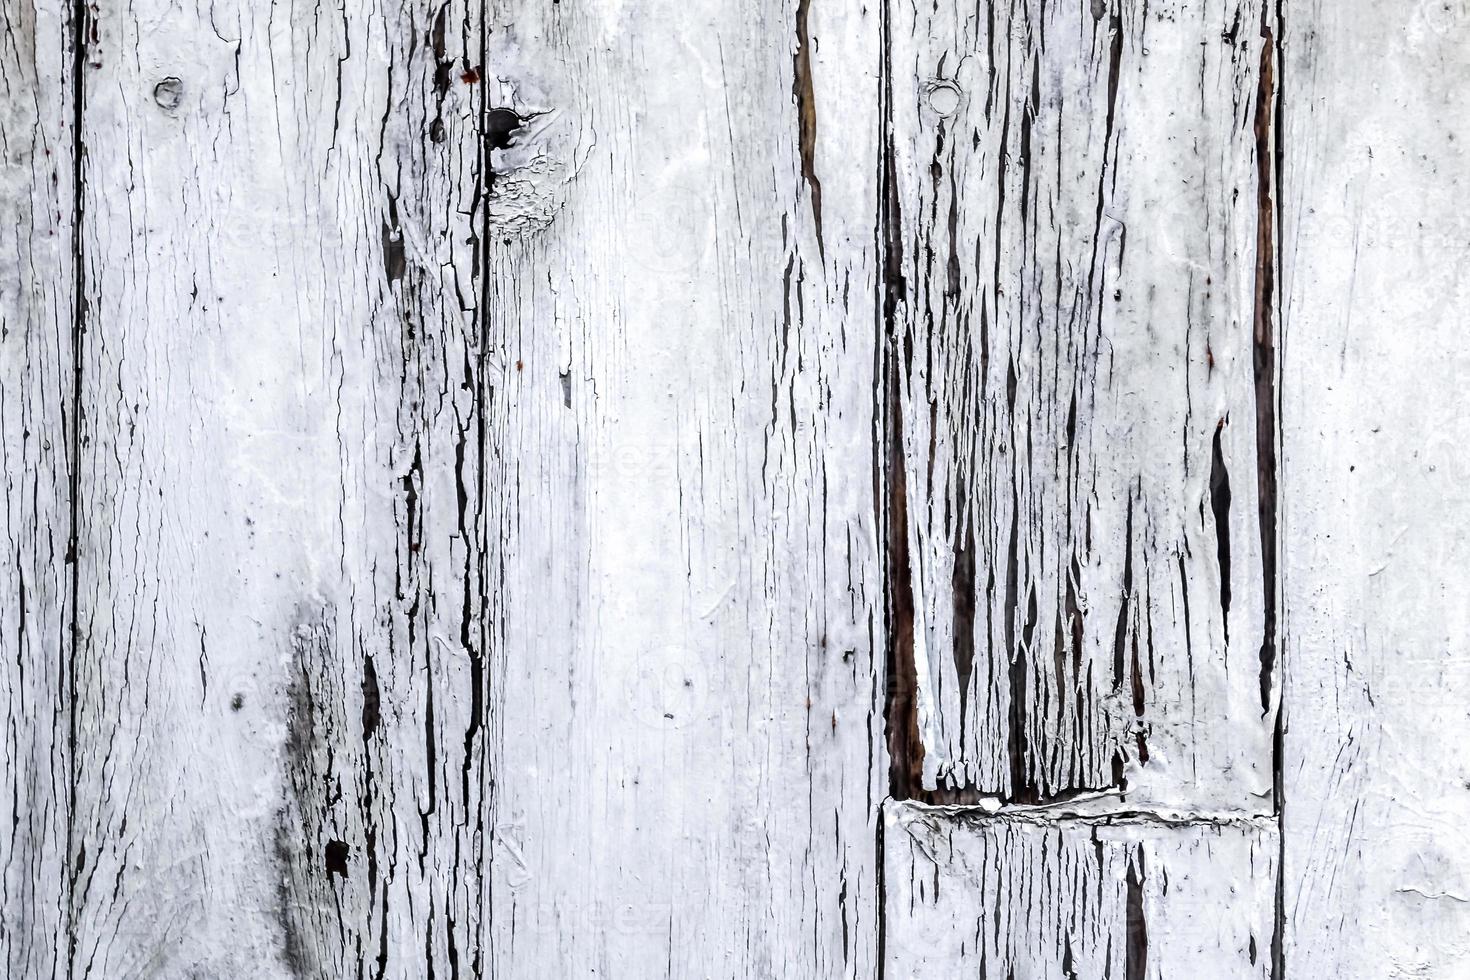 textura de madera con pintura blanca en mal estado - Foto de archivo  #28192819